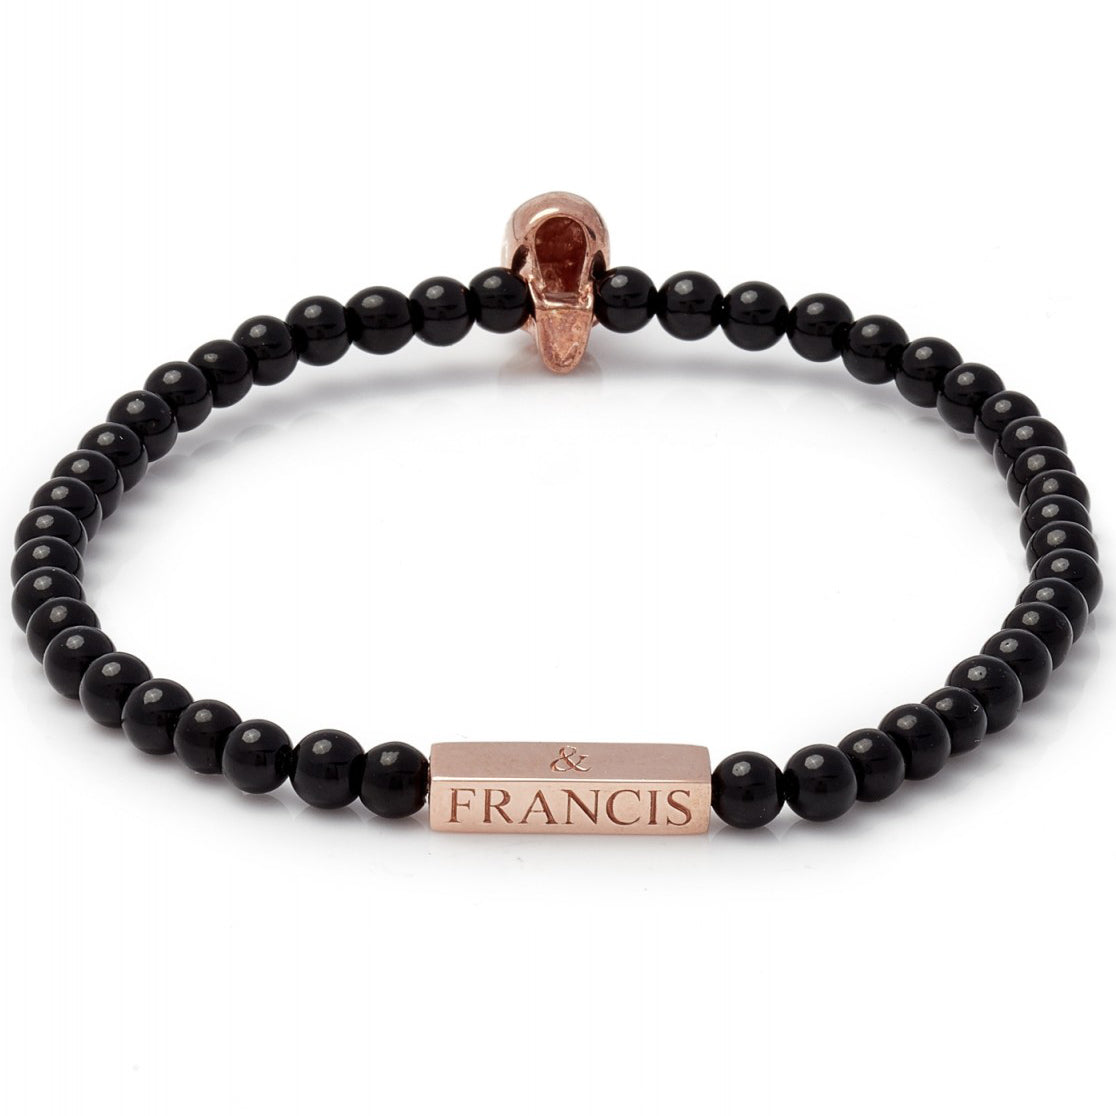 Deakin & Francis Onyx Bead Skull Bracelet, Black, Length 7.5 inches